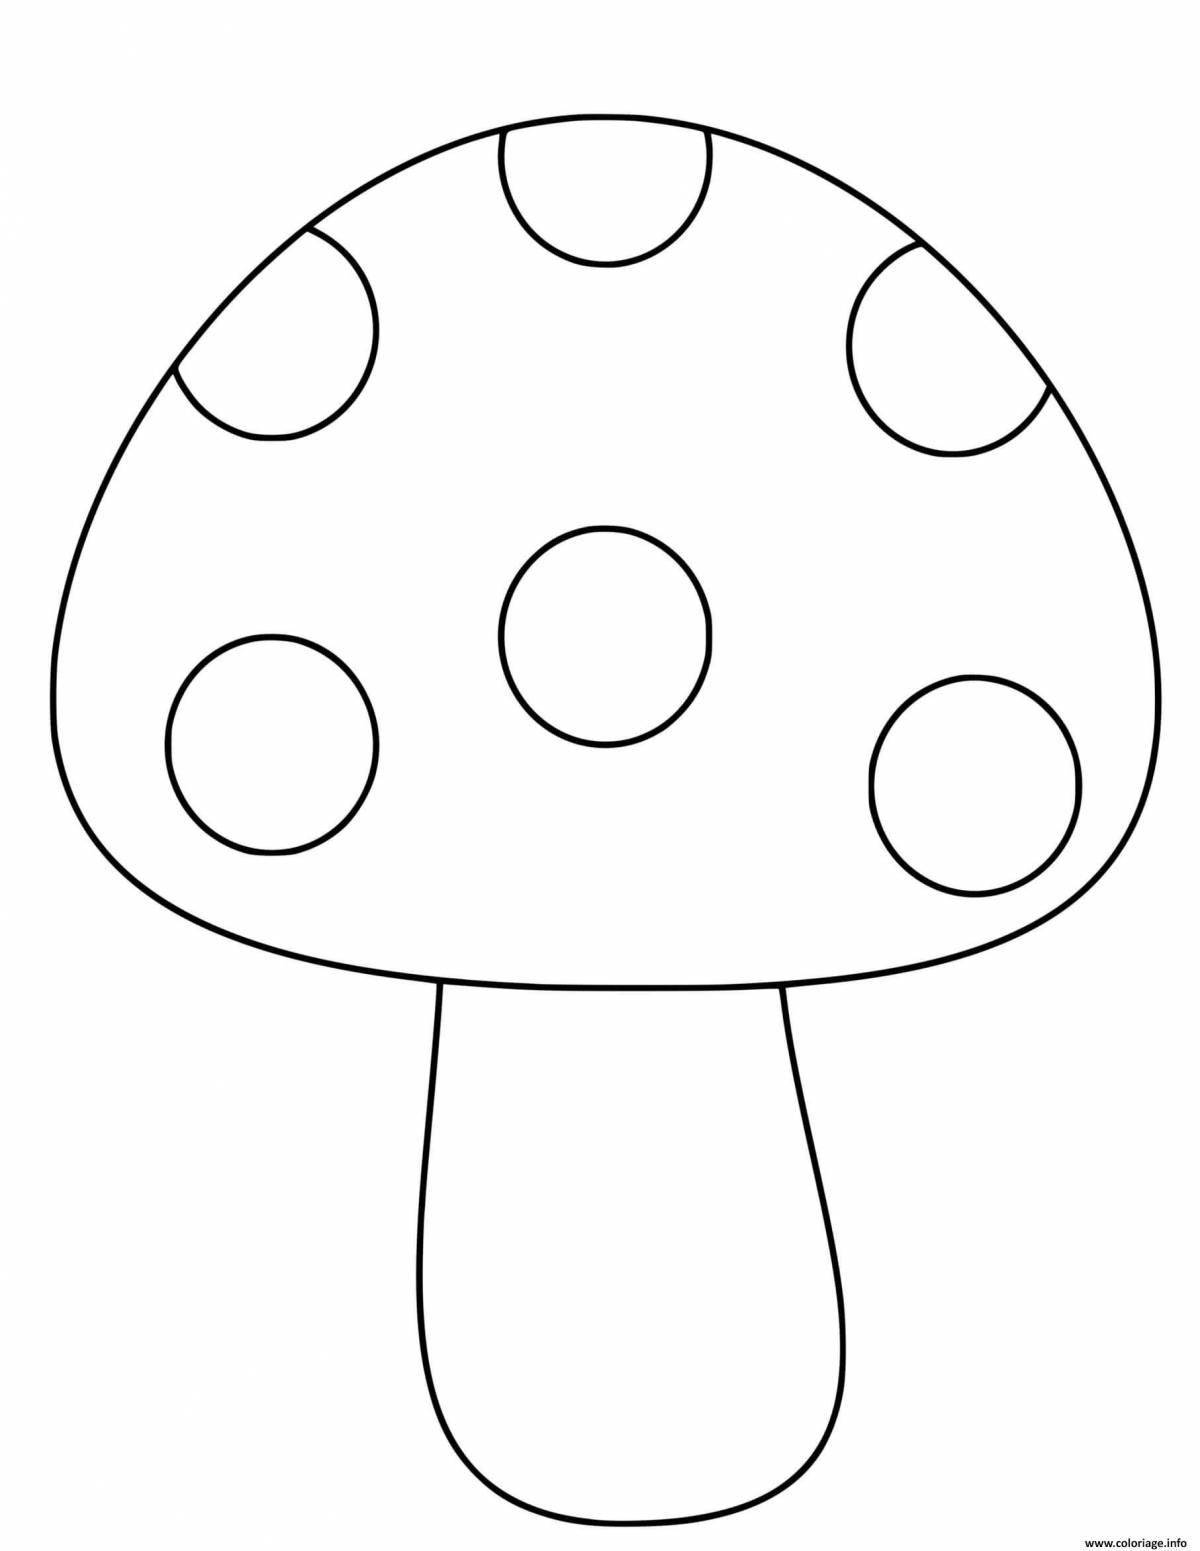 Развлекательная раскраска грибов для детей 3-4 лет